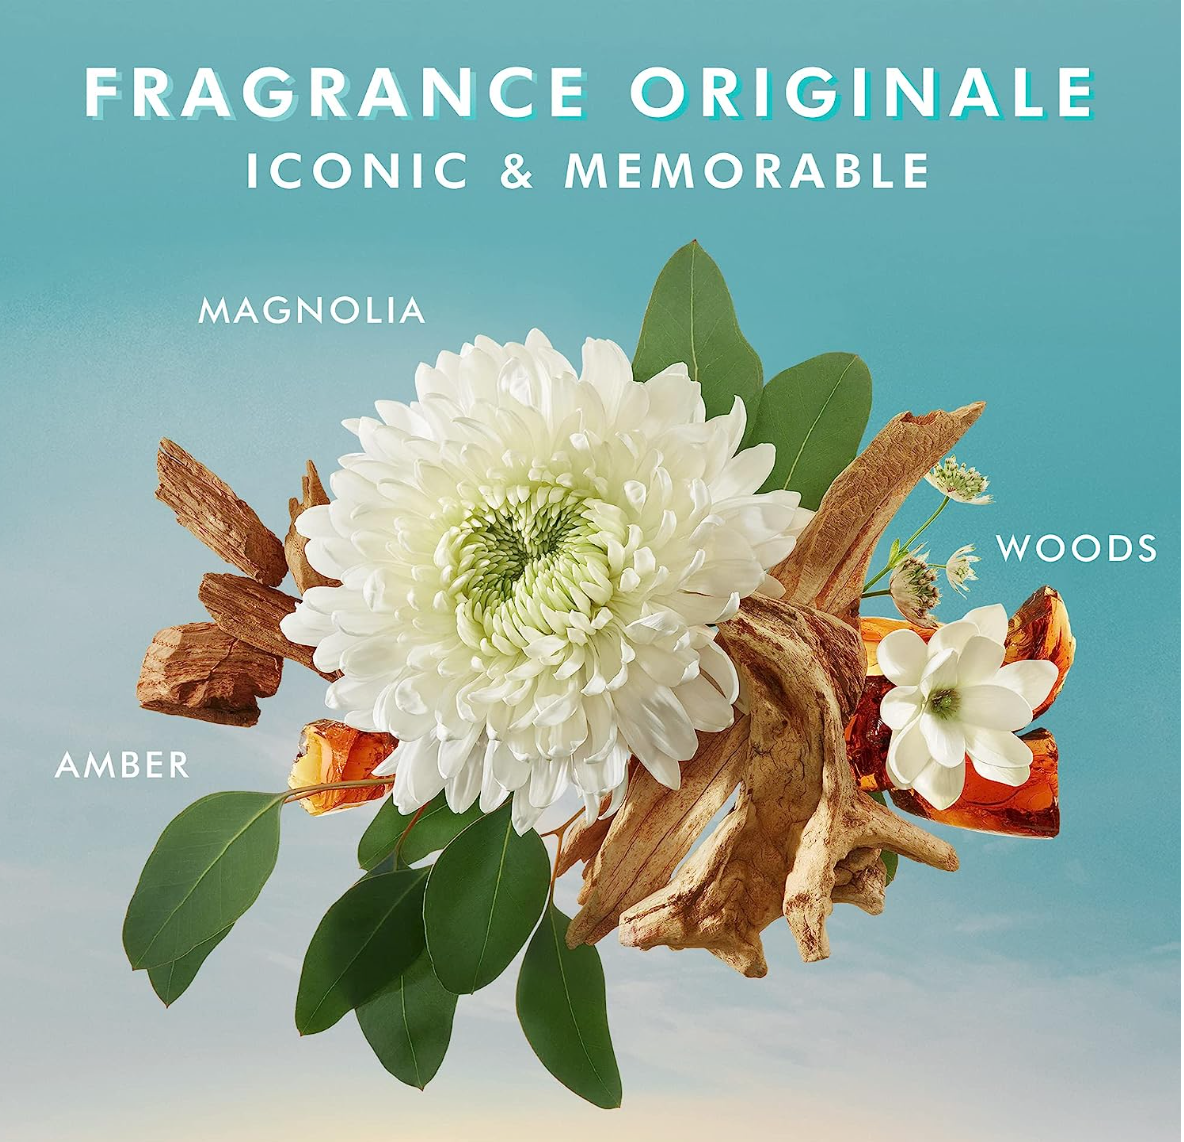 Moroccanoil Body Lotion Fragrance Originale